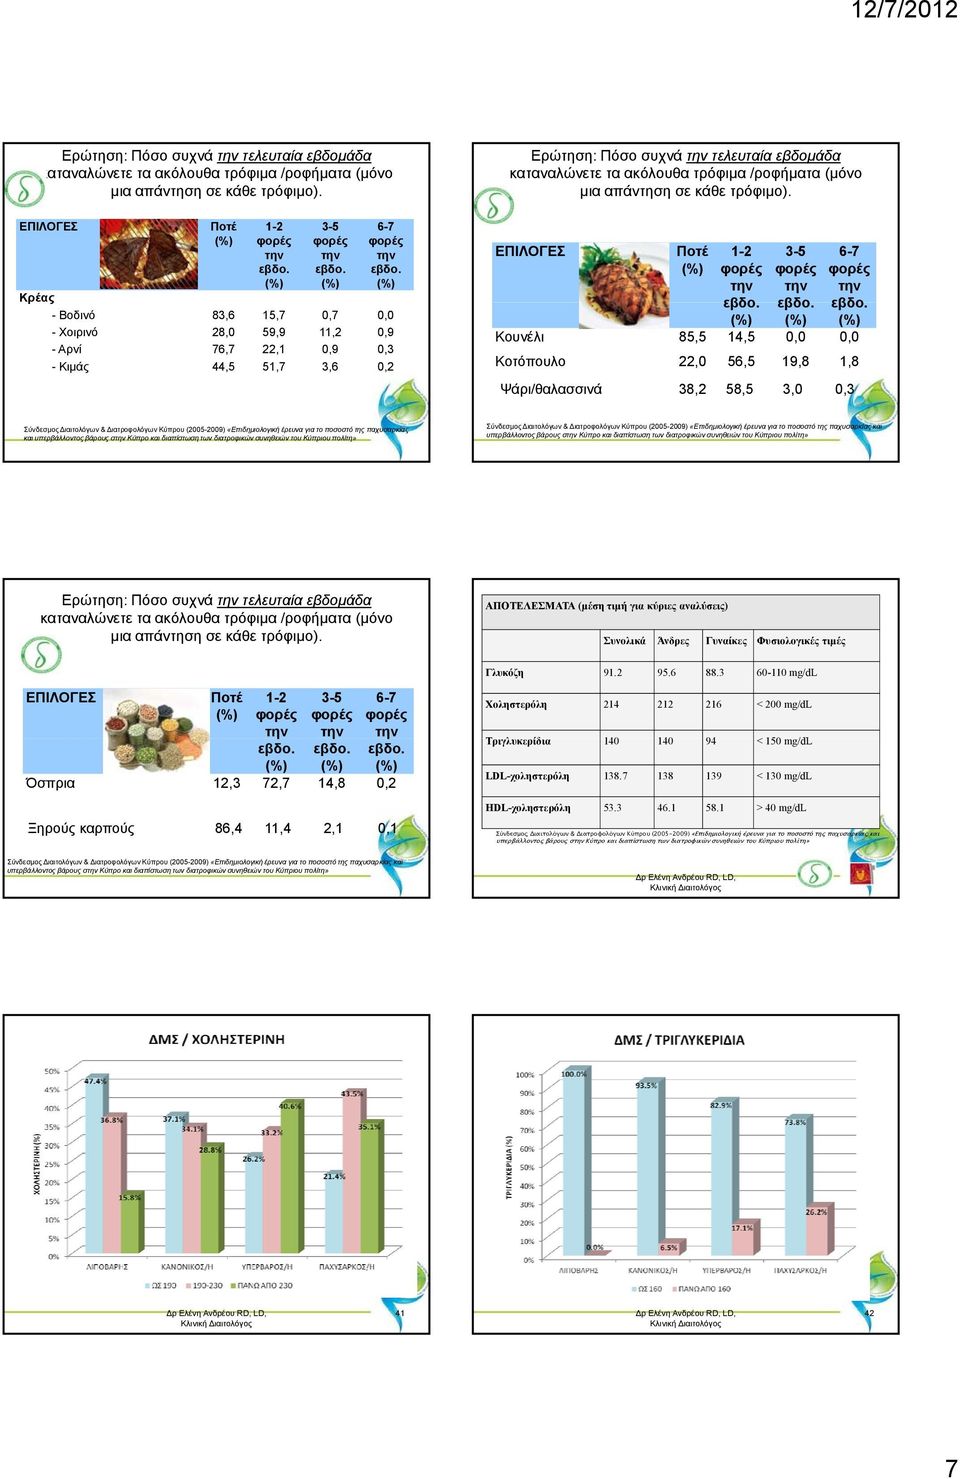 Κοτόπουλο 22,0 56,5 19,8 1,8 Ψάρι/θαλασσινά 38,2 58,5 3,0 0,3 Σύνδεσμος Διαιτολόγων & Διατροφολόγων Κύπρου (2005-2009) «Επιδημιολογική έρευνα για το ποσοστό της παχυσαρκίας και υπερβάλλοντος βάρους σ